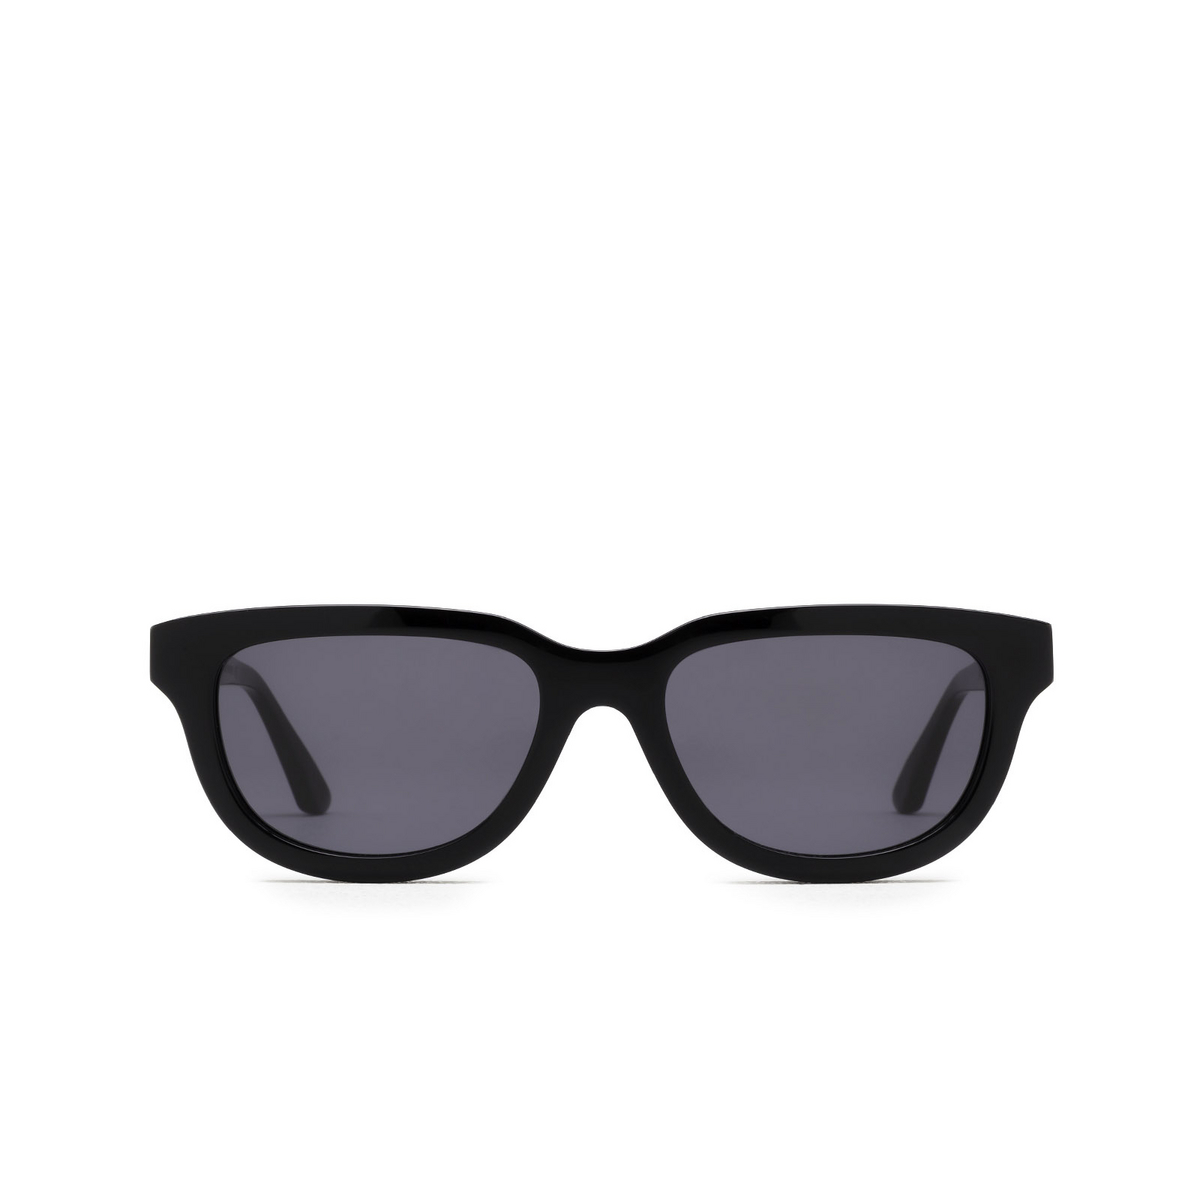 Huma® Square Sunglasses: Lion color Black 06 - front view.